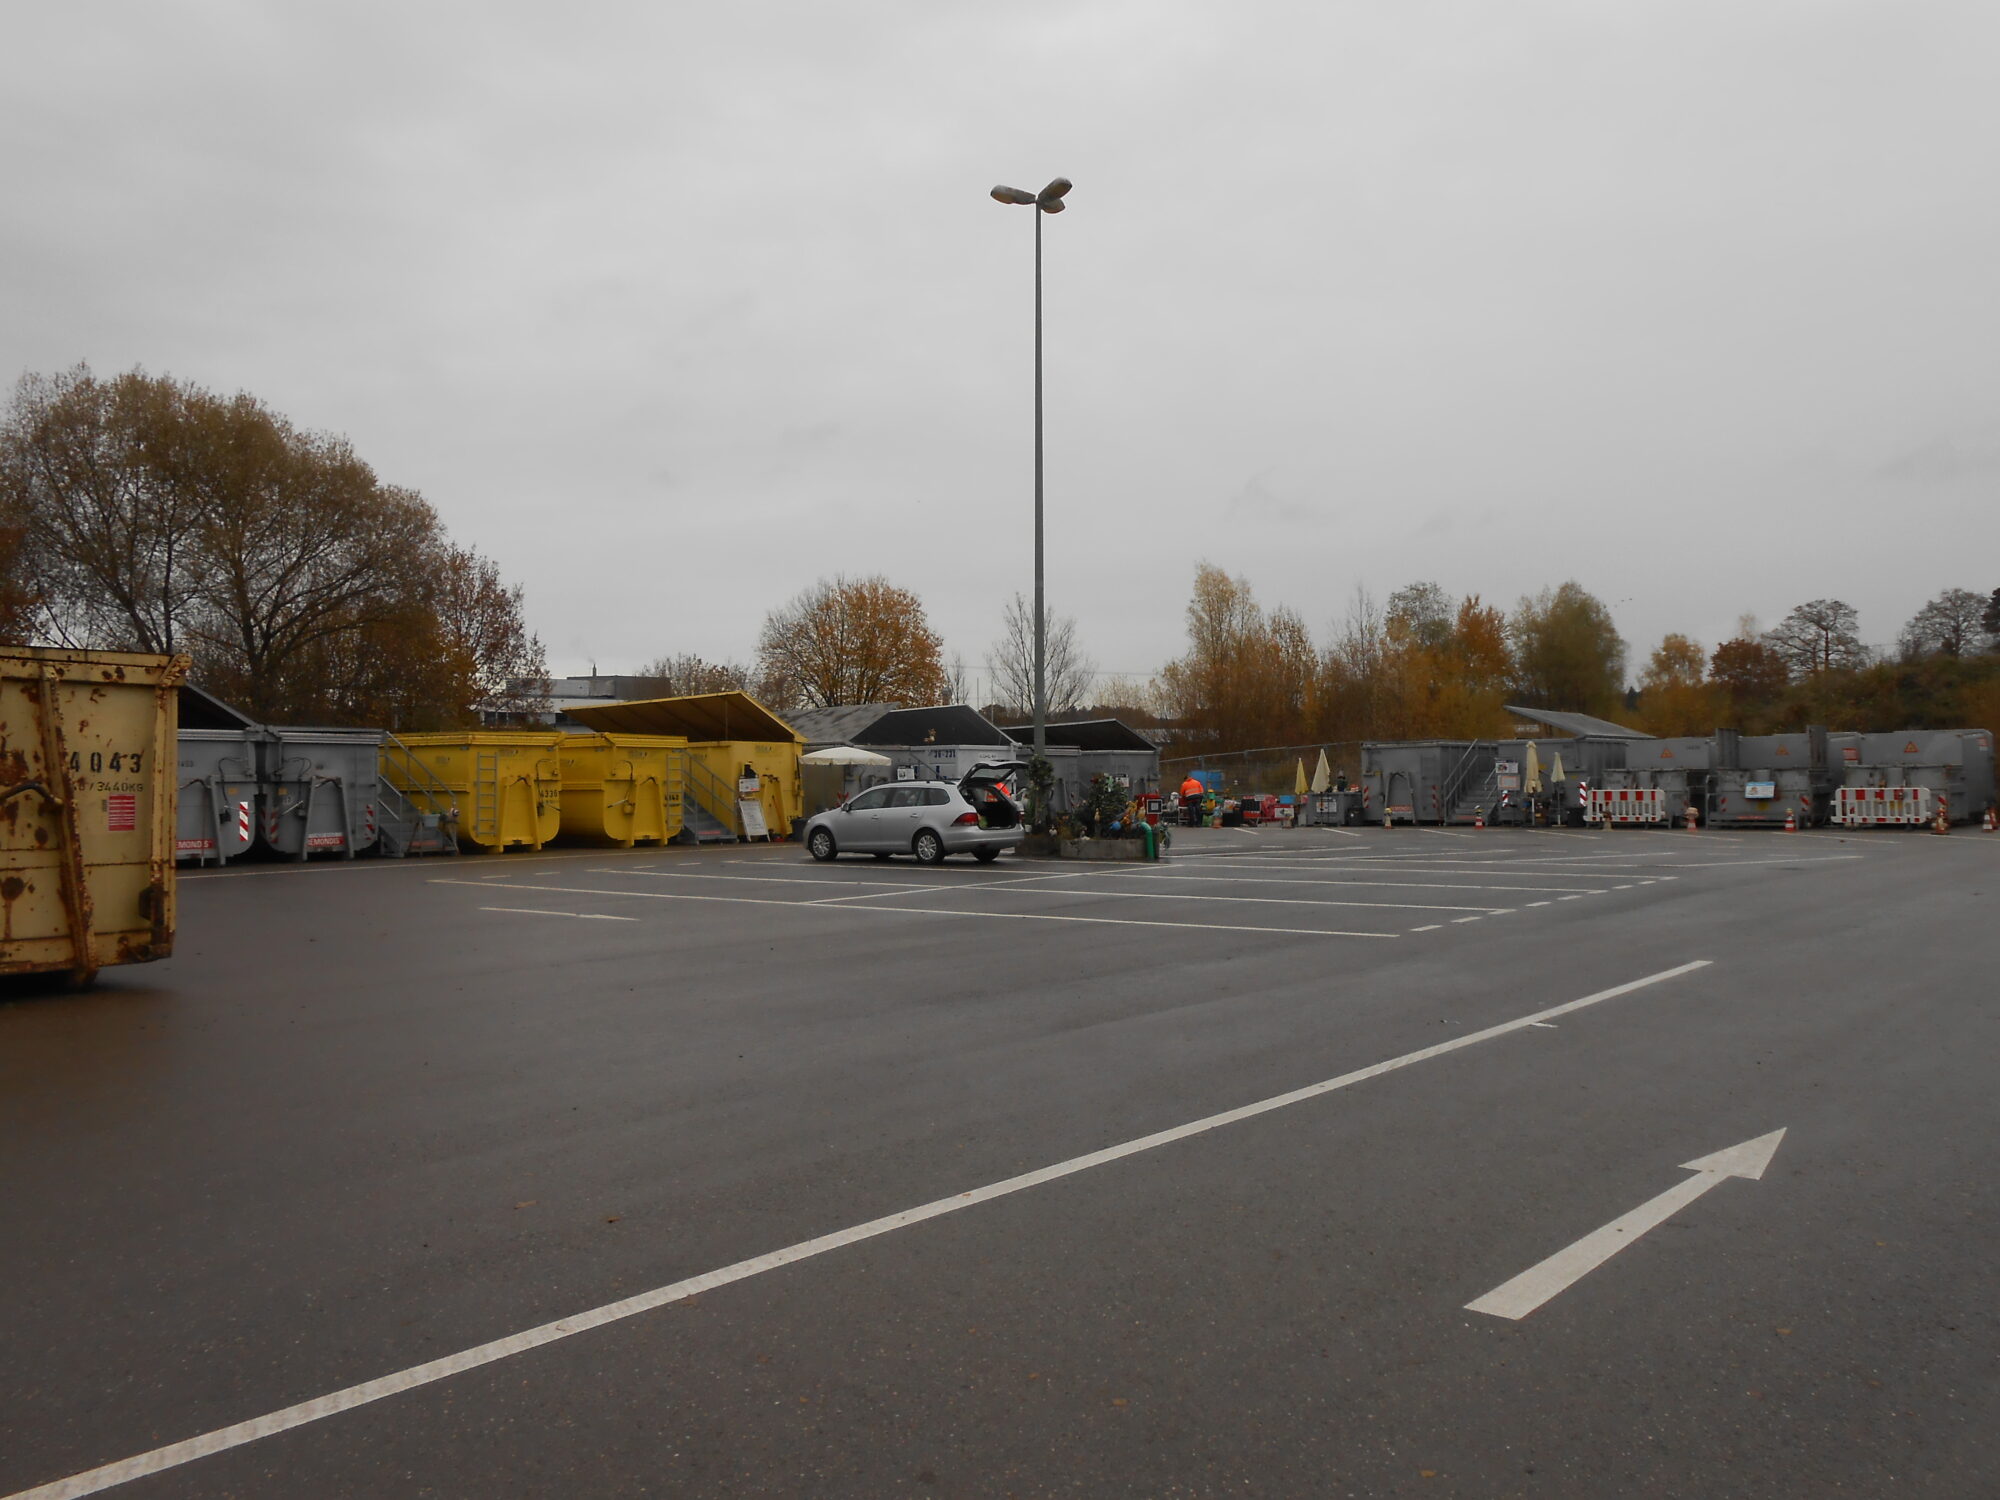 Wertstoffsammelstelle in Friedberg, im Vordergrund Parkplatz, im Hintergrund Container.